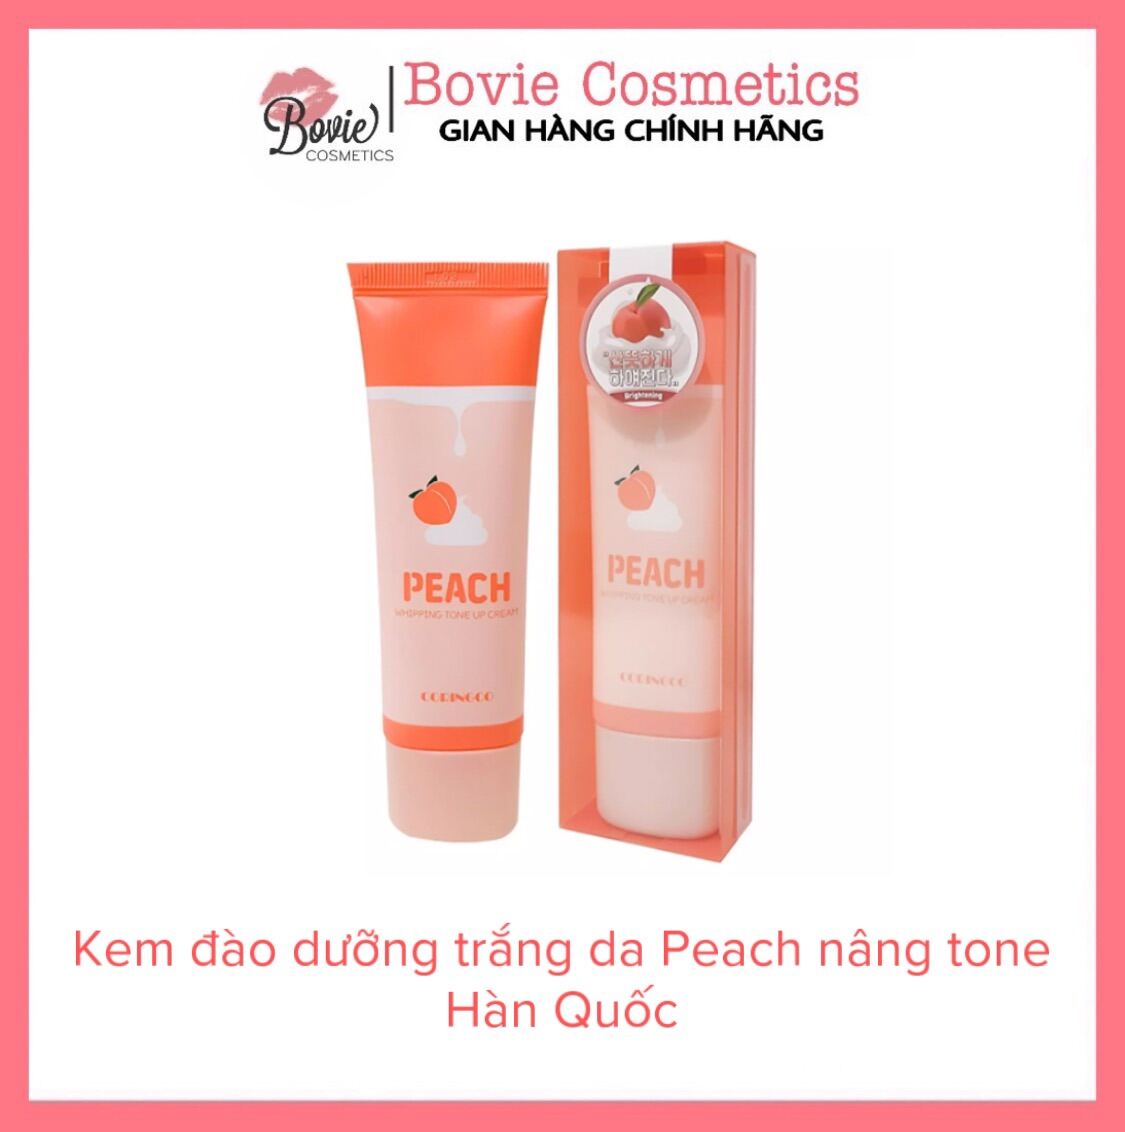 Kem Đào Dưỡng Trắng Nâng Tông Da Coringco Peach Whipping Tone Up Cream 50ml Hàn Quốc thumbnail